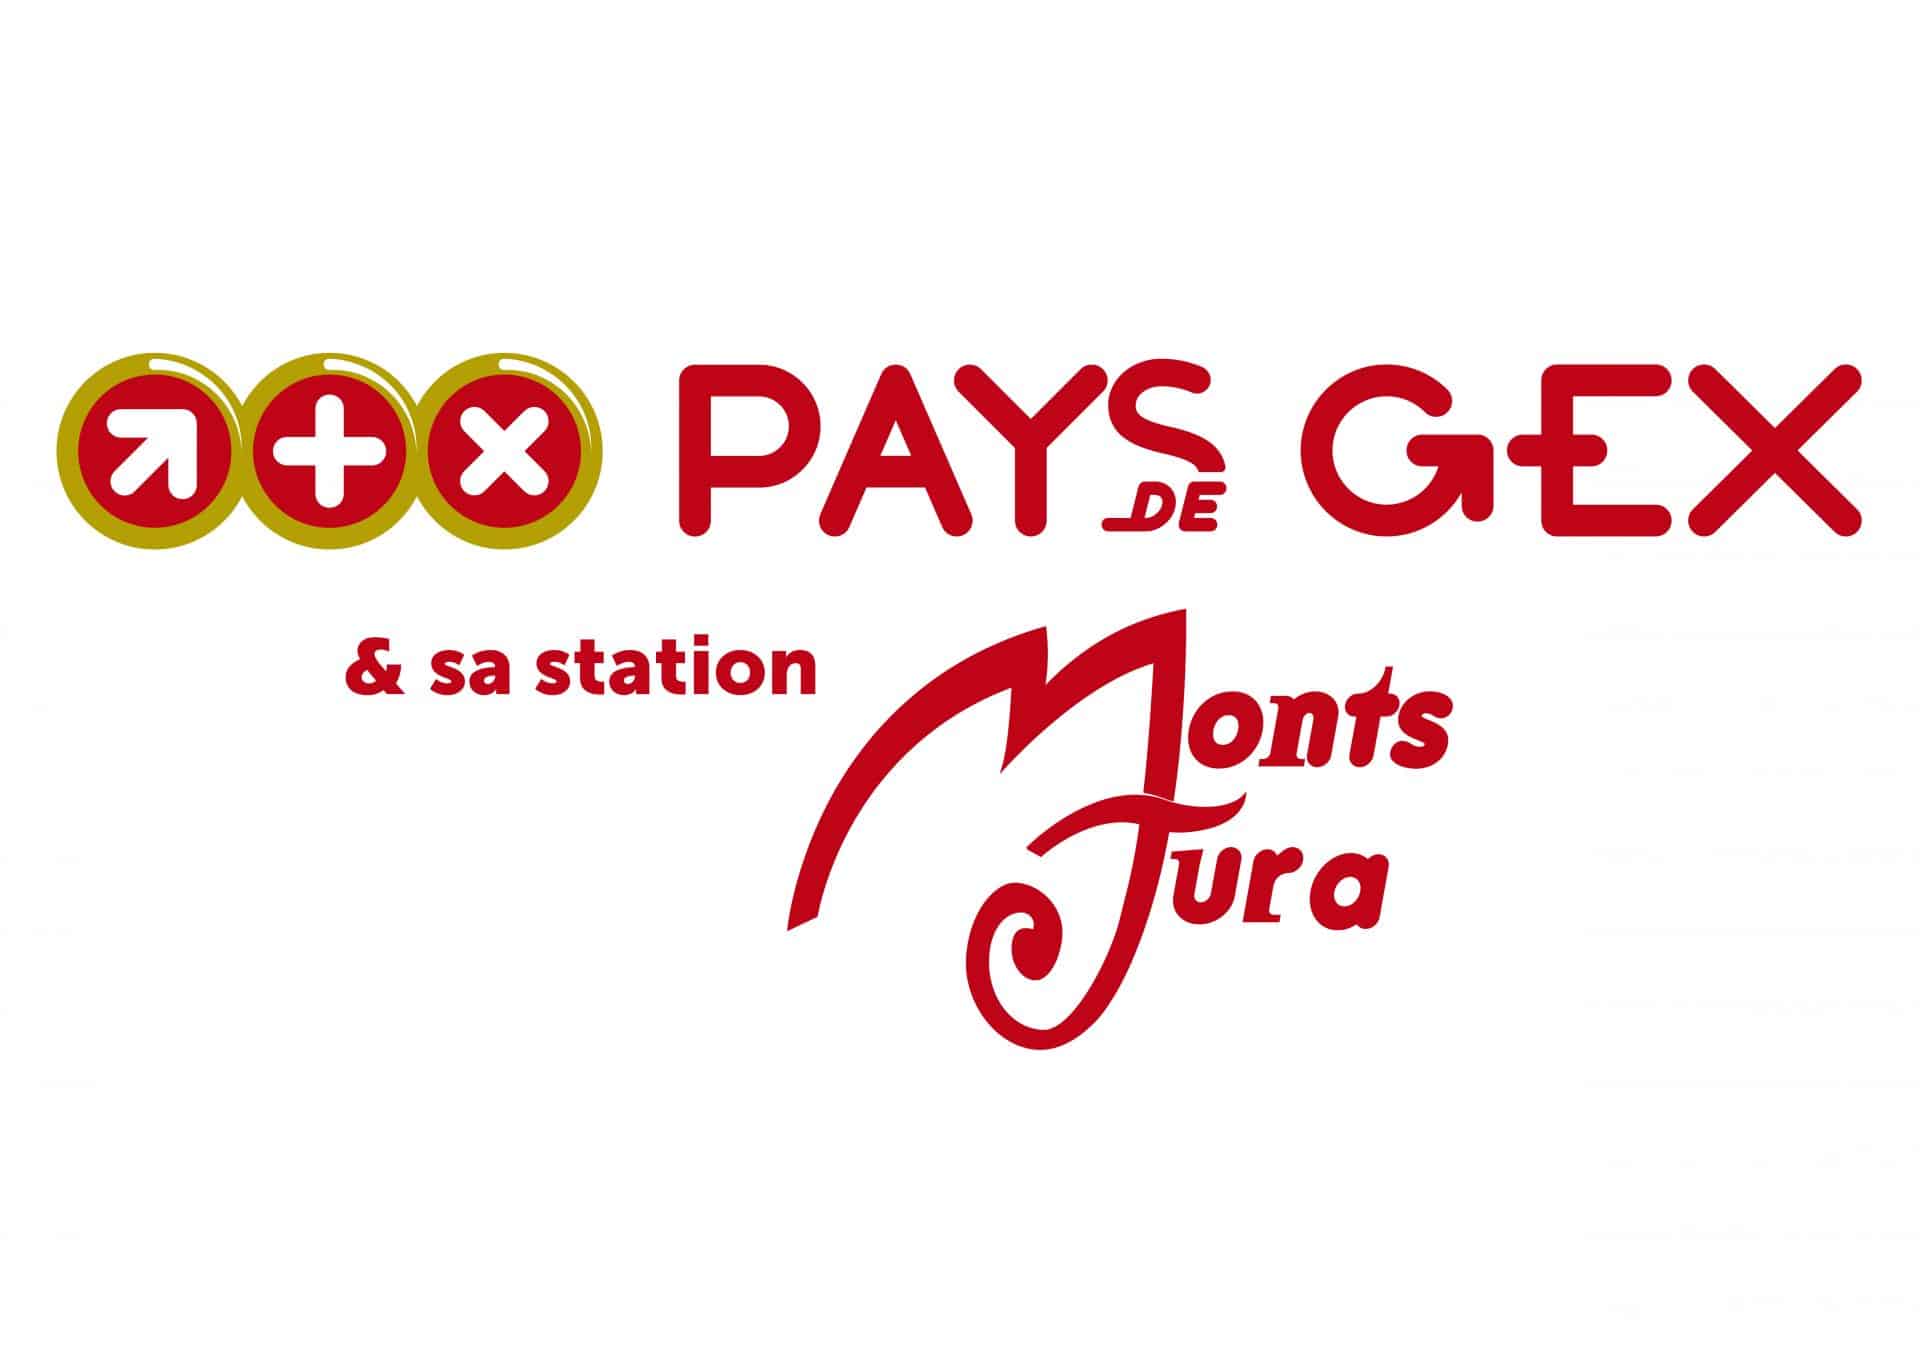 Office de tourisme Pays de Gex - Monts Jura